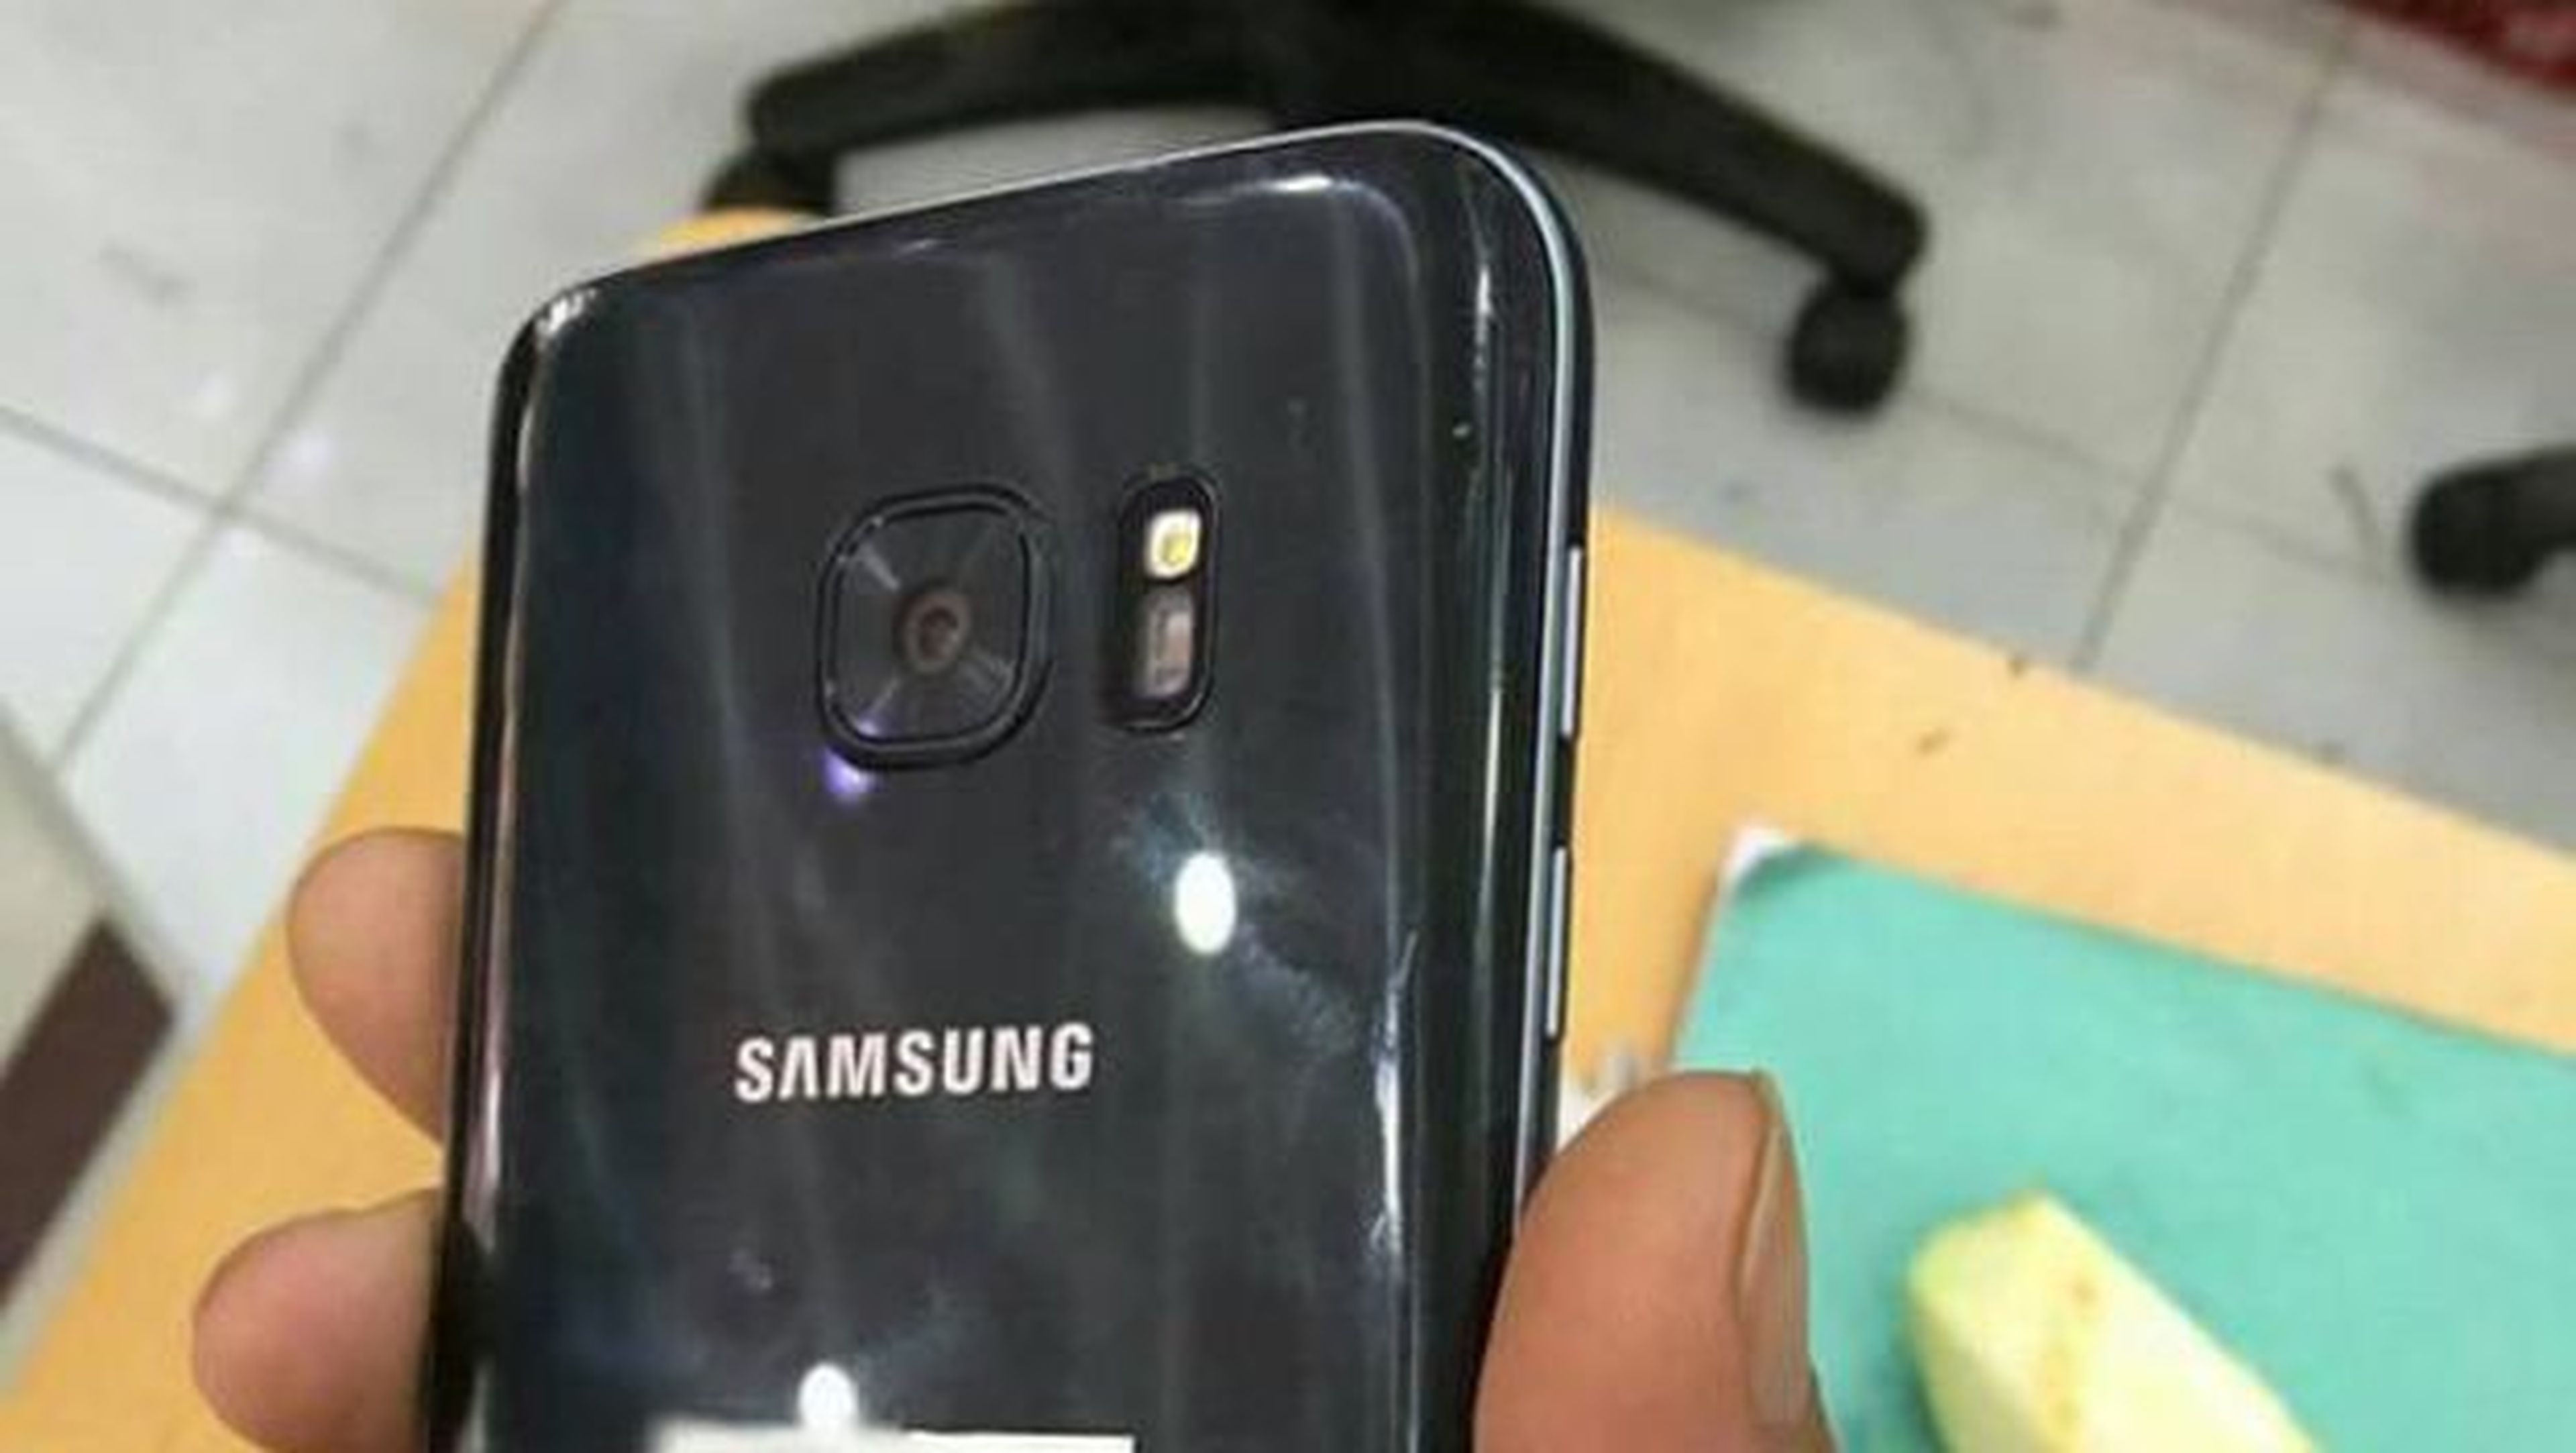 Samsung Galaxy S7, acompañado de un regalo